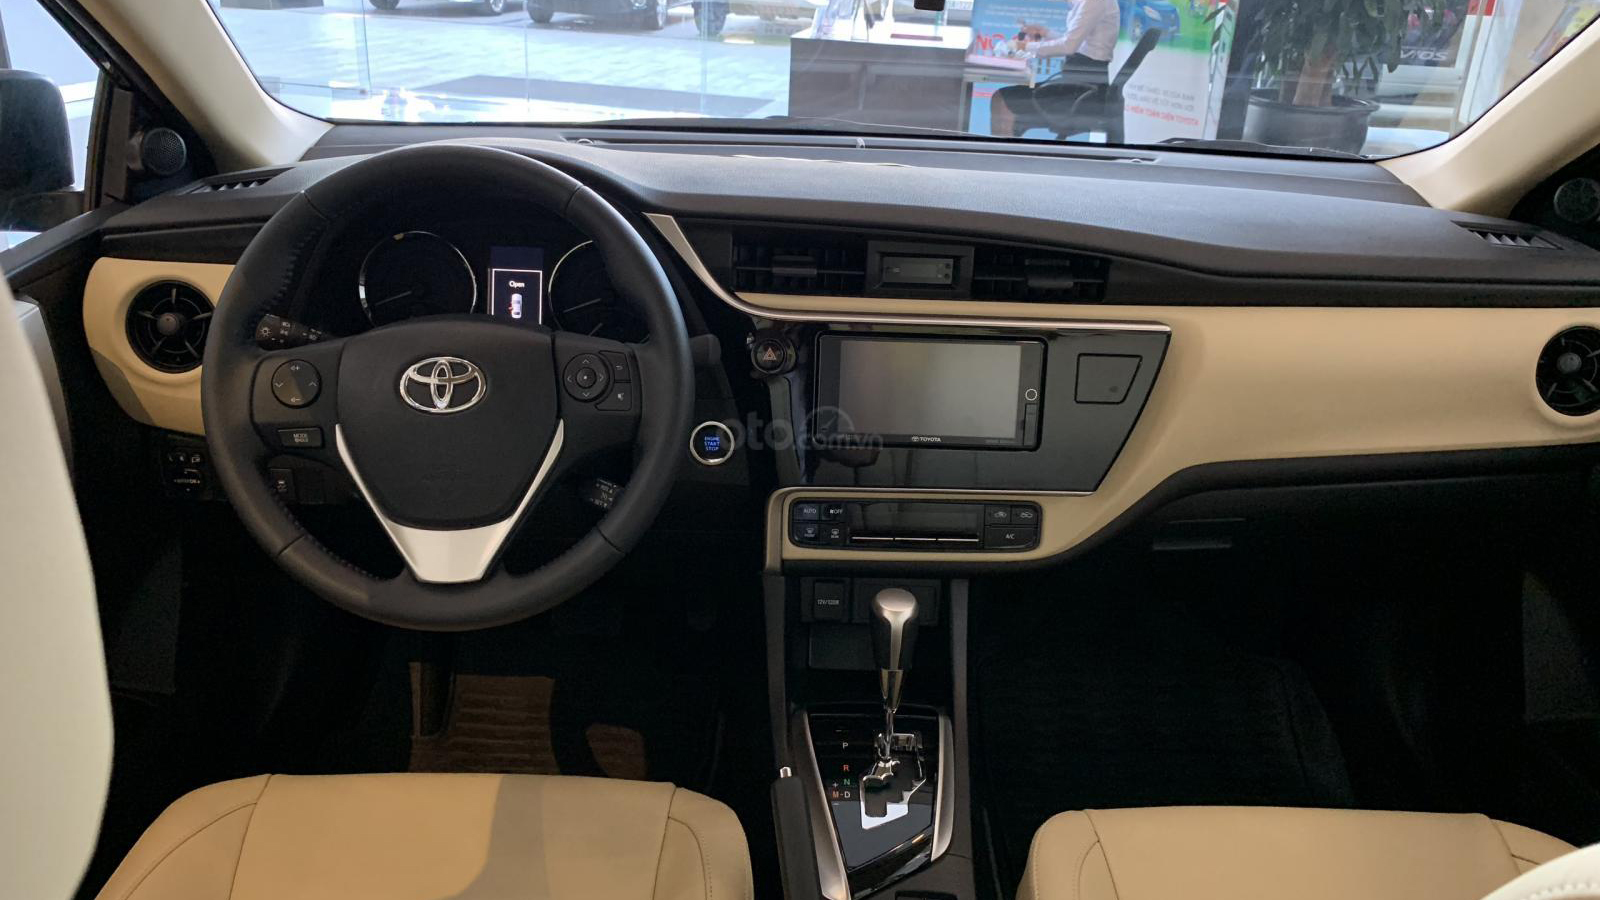 So sánh Toyota Corolla Altis 2020 và bản hiện hành qua ảnh a8